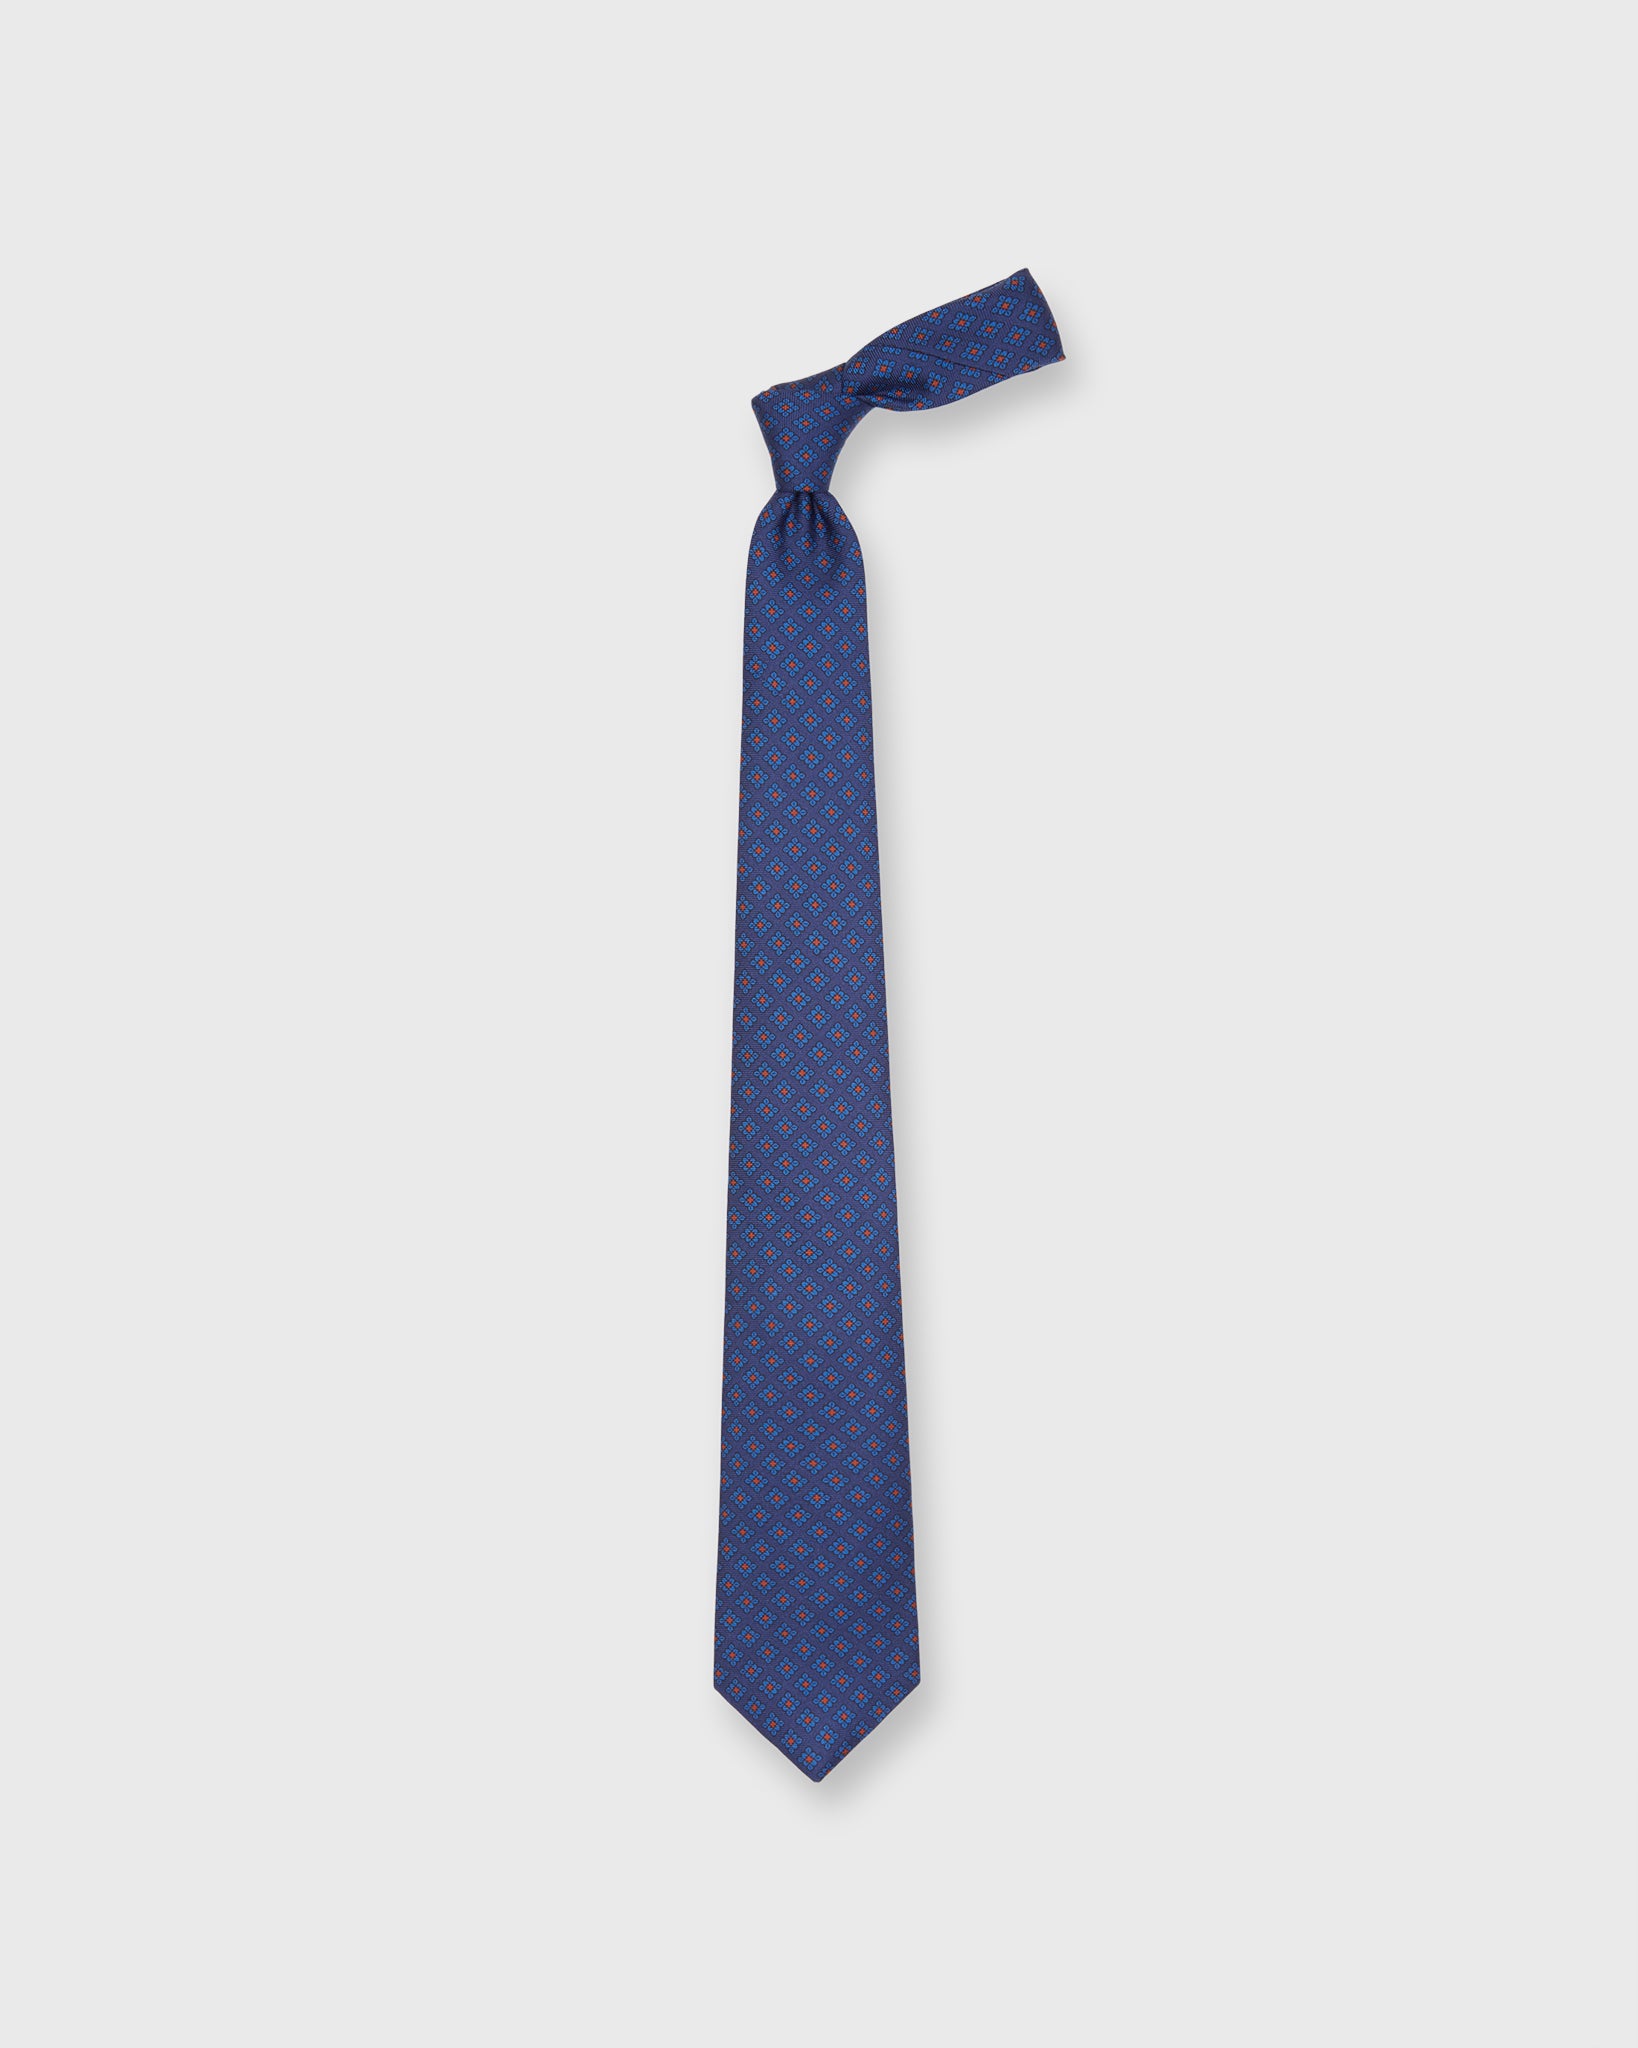 Silk Print Tie in Navy/Blue Foulard